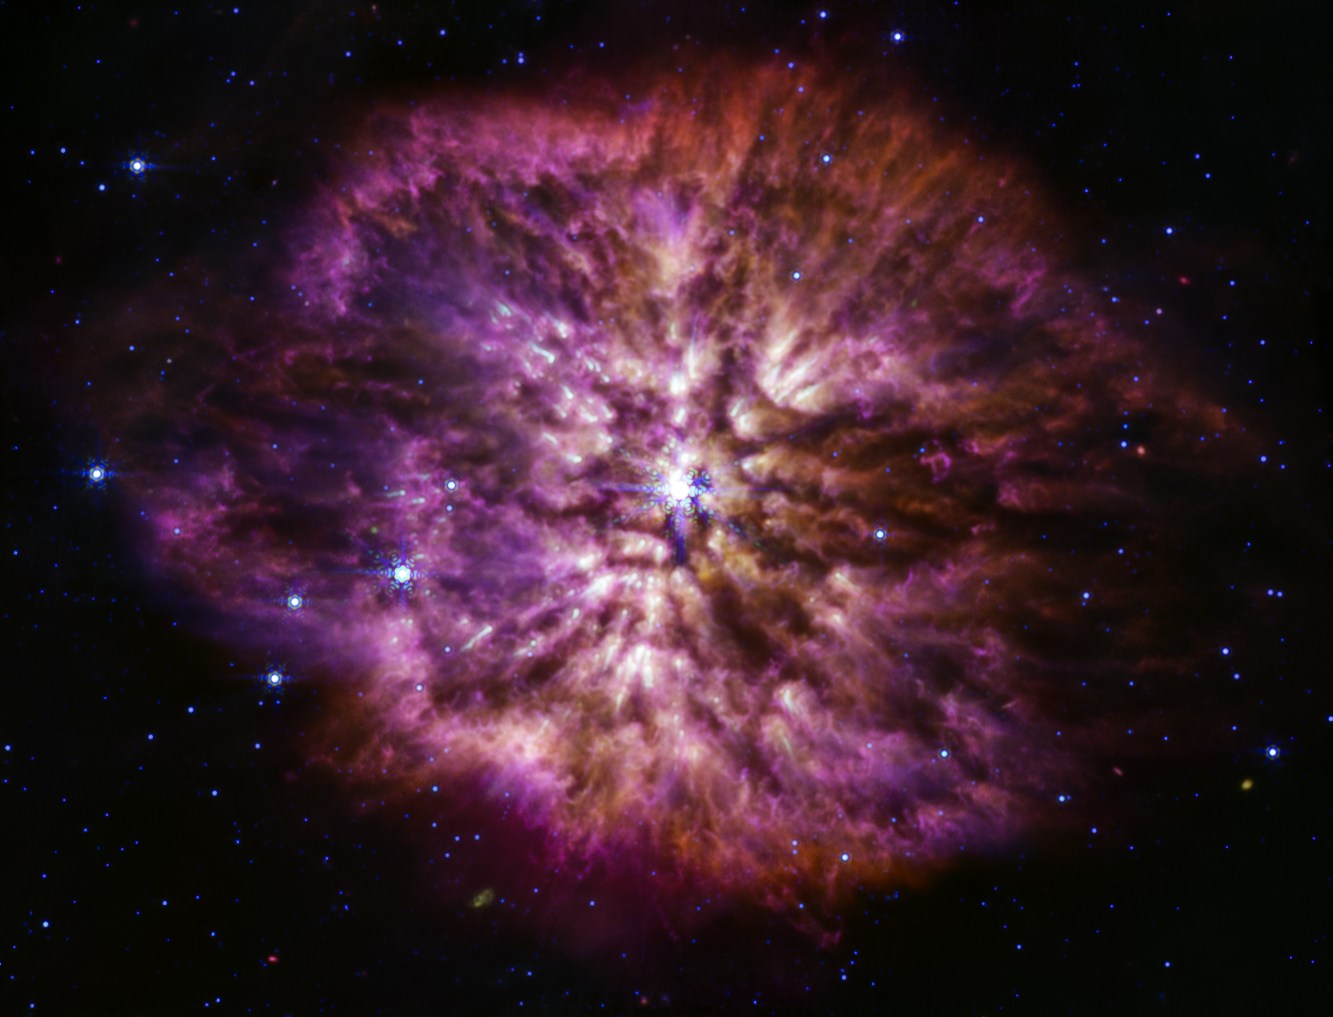 Телескоп "Джеймс Уэбб" показал фото смерти звезды. Это сверхновая в созвездии Стрельца